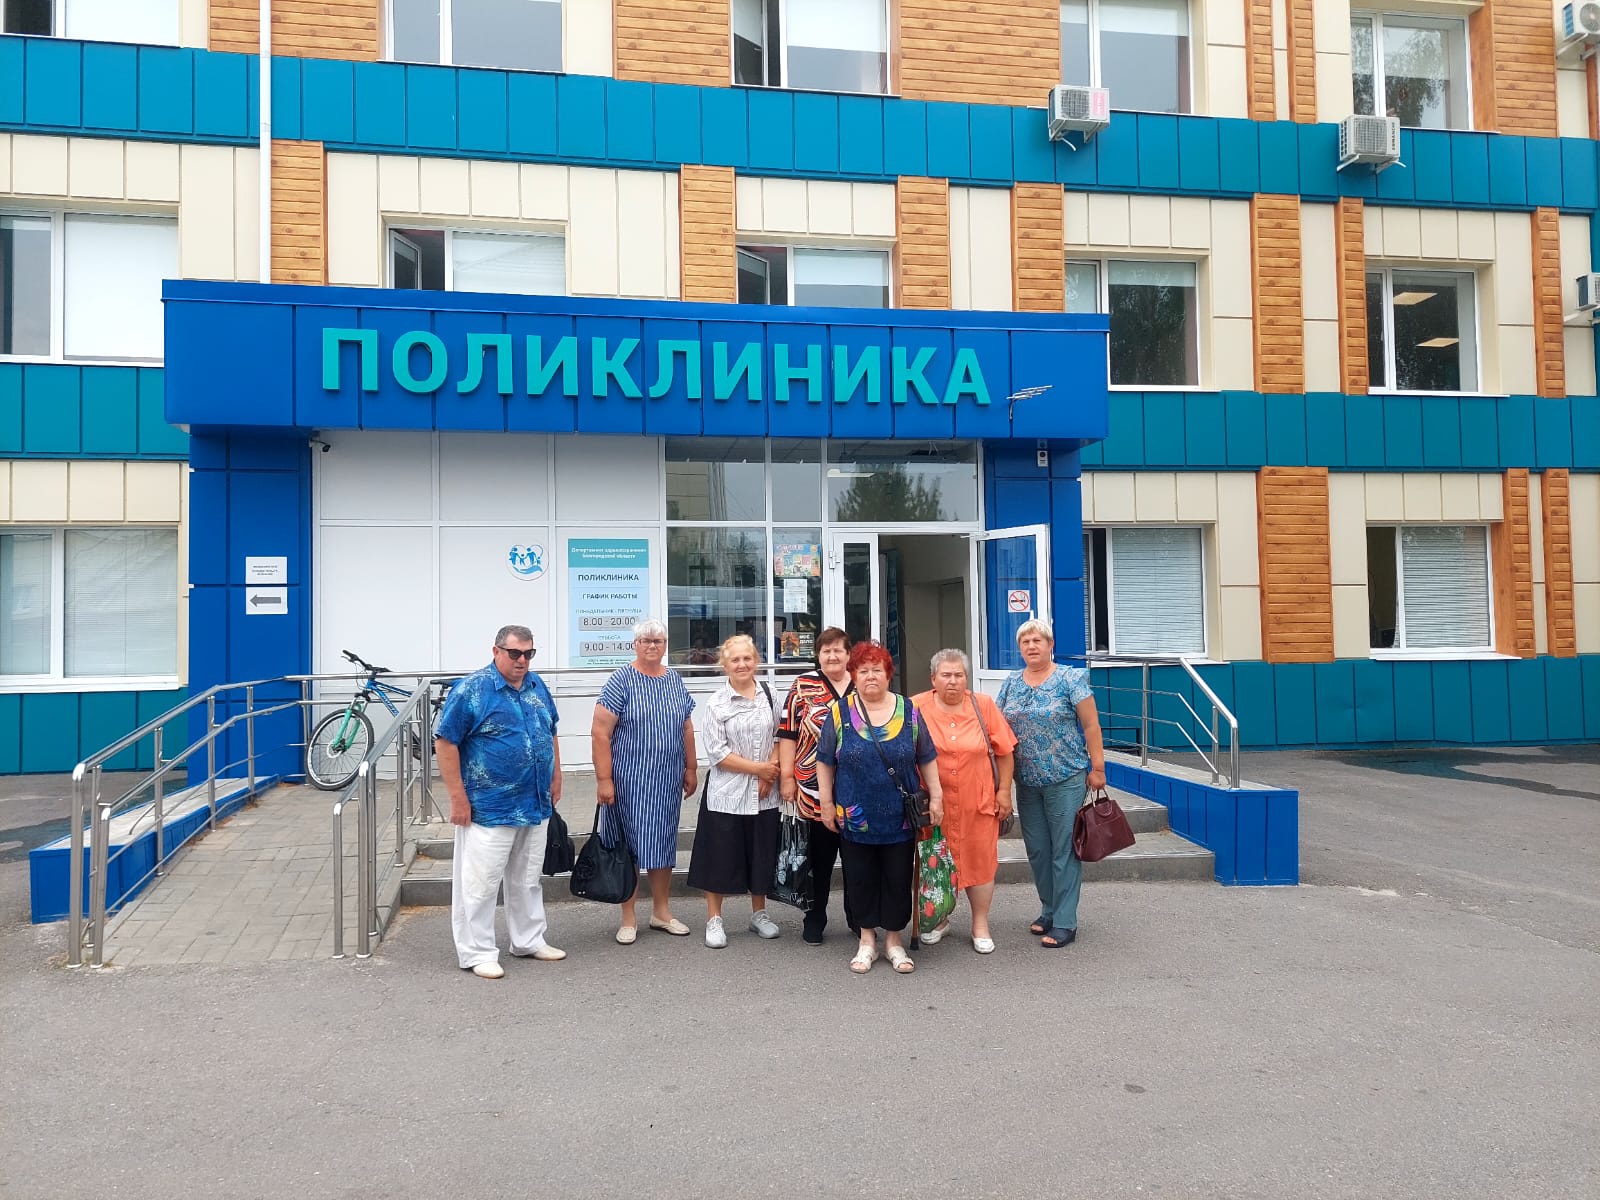 Более 1700 жителей Белгородского района старше 65 лет воспользовались услугой доставки в медицинские учреждения.